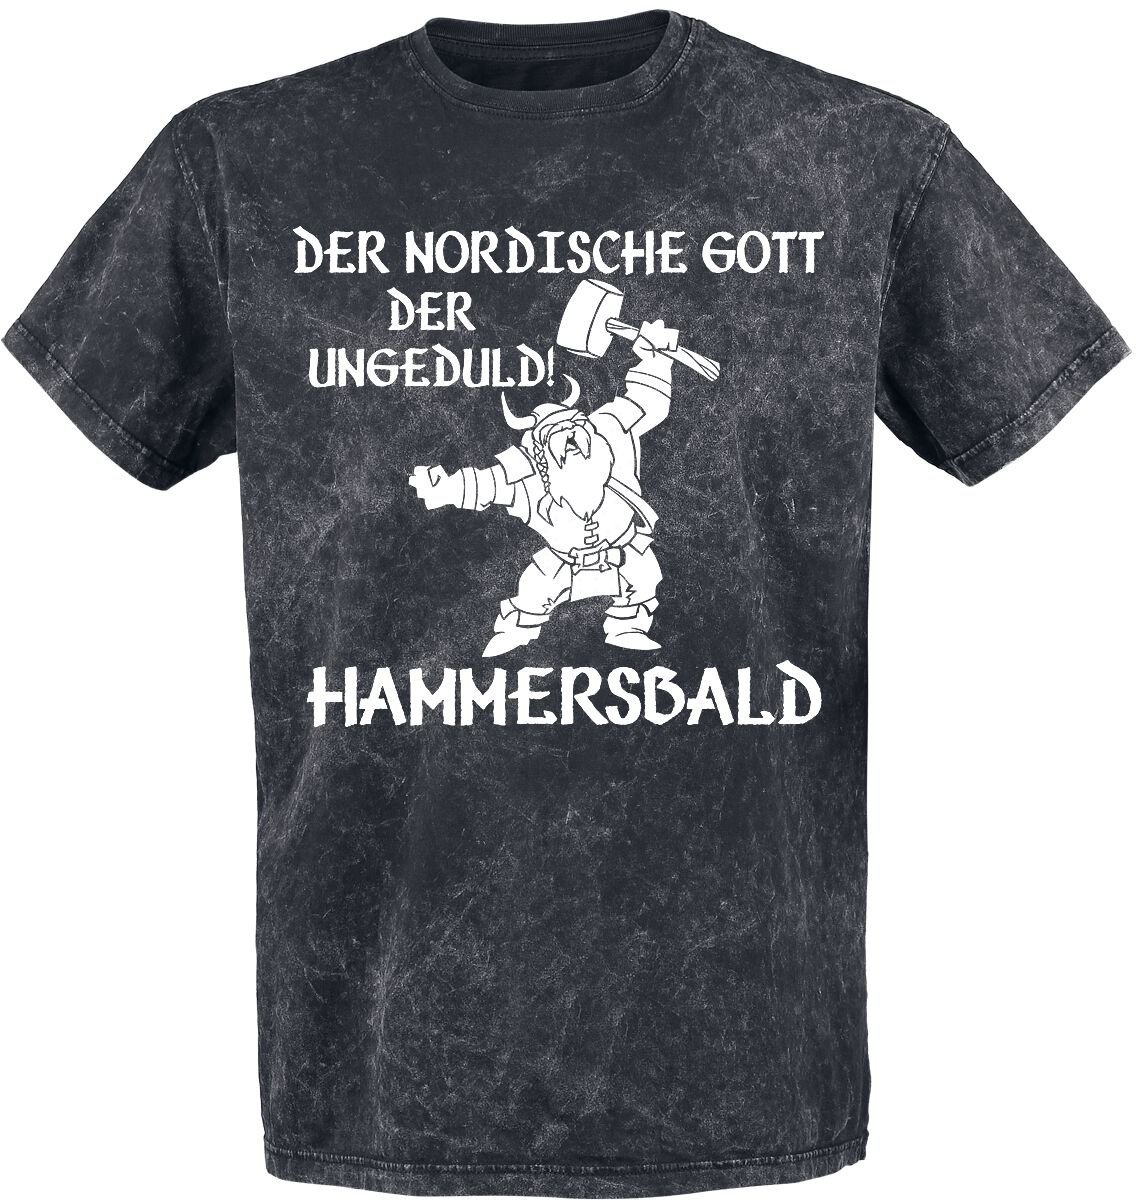 Funshirt T-Shirt - Der nordische Gott der Ungeduld! Hammersbald - M bis 4XL - für Männer - Größe 4XL - dunkelgrau